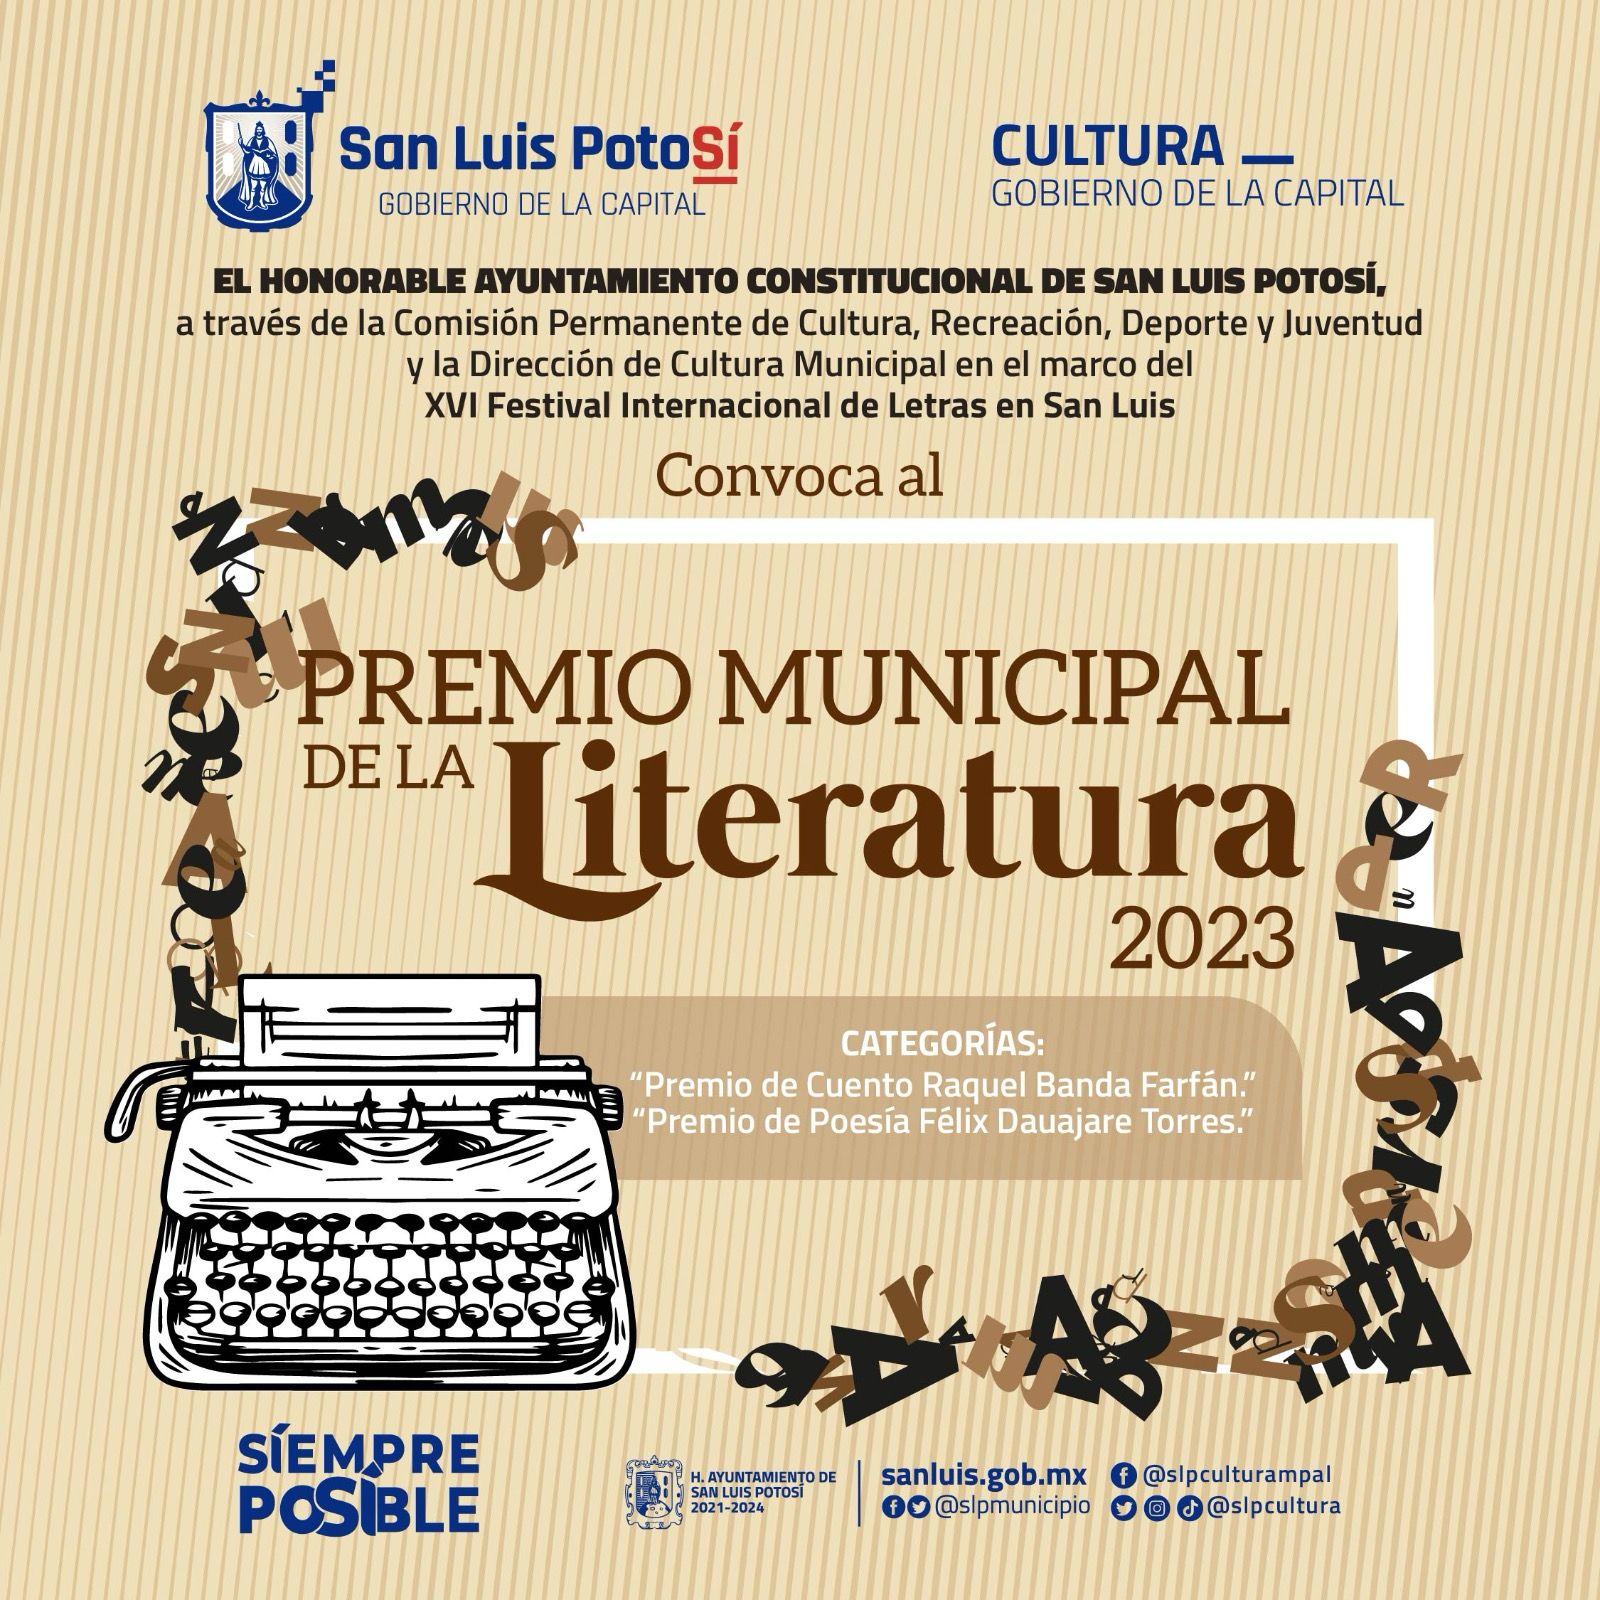 Para obtener el Premio Municipal de Literatura 2023, Comisión de Cultura del Cabildo reitera invitación a participar